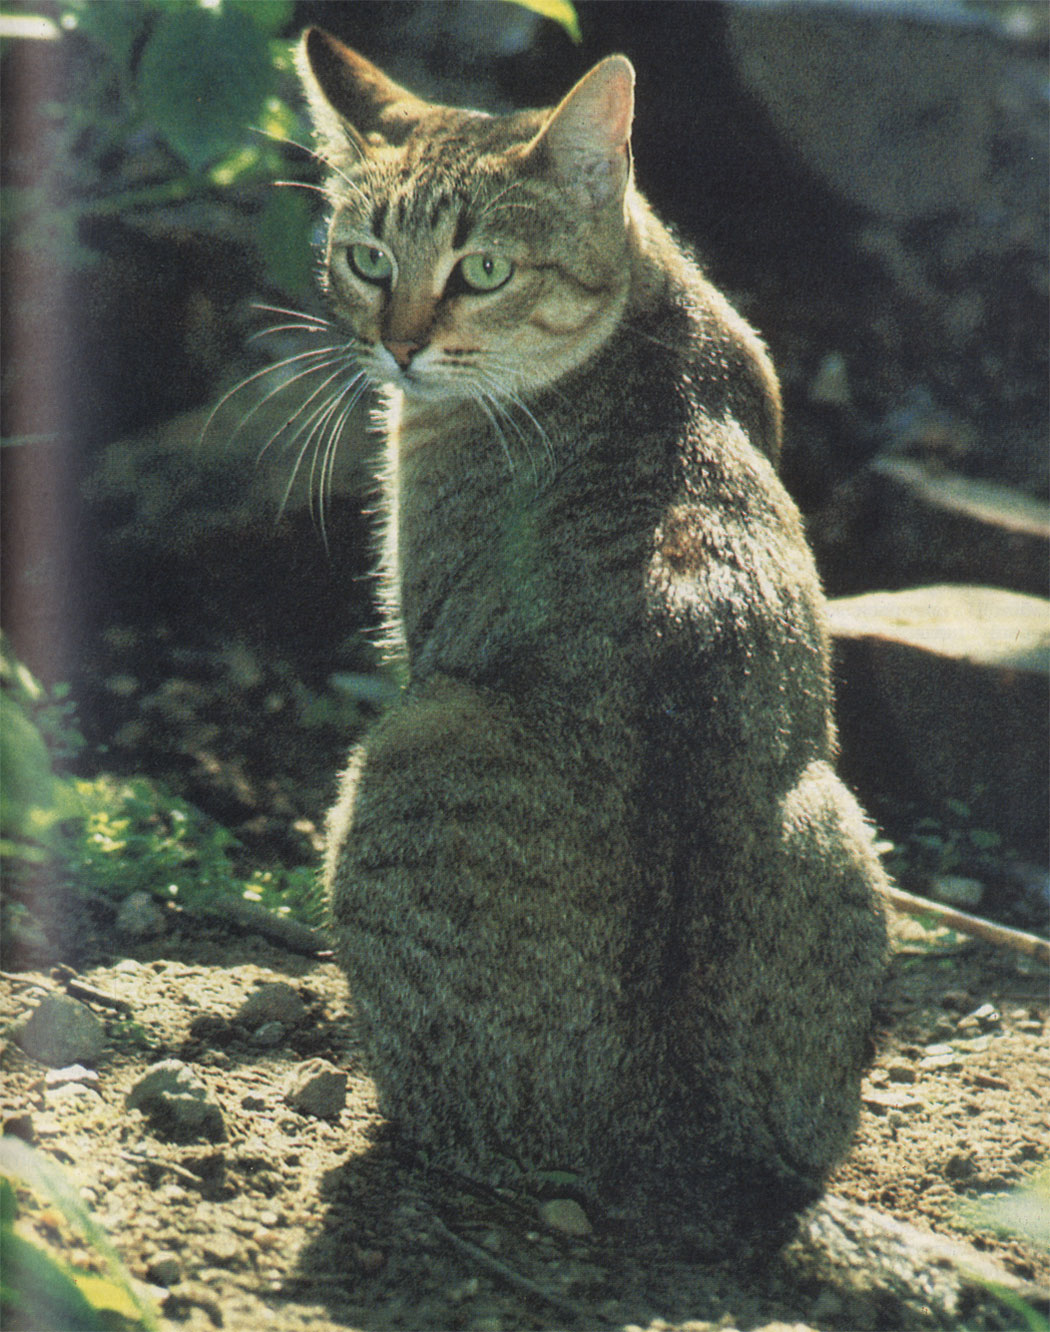 Издавна известны грациозная, узкотелая форма домашней кошки, представленная еще на египетских скульптурах, и коренастая, в значительной мере характеризующая европейскую дикую кошку. Комбинация двух форм являет собой среднесильный тип